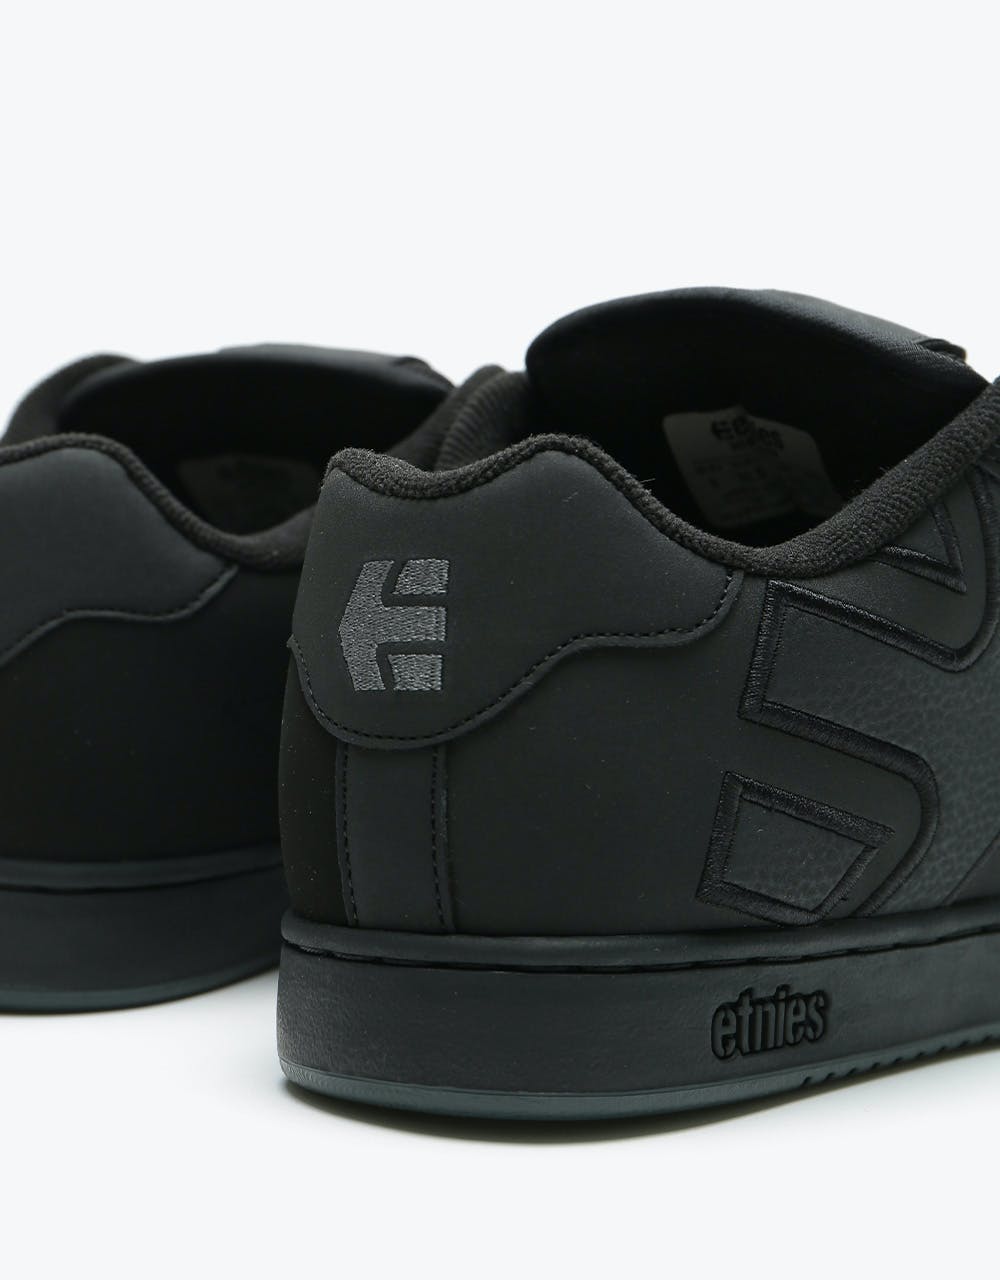 Etnies Fader Skate Shoes - Black/Dirty/Wash